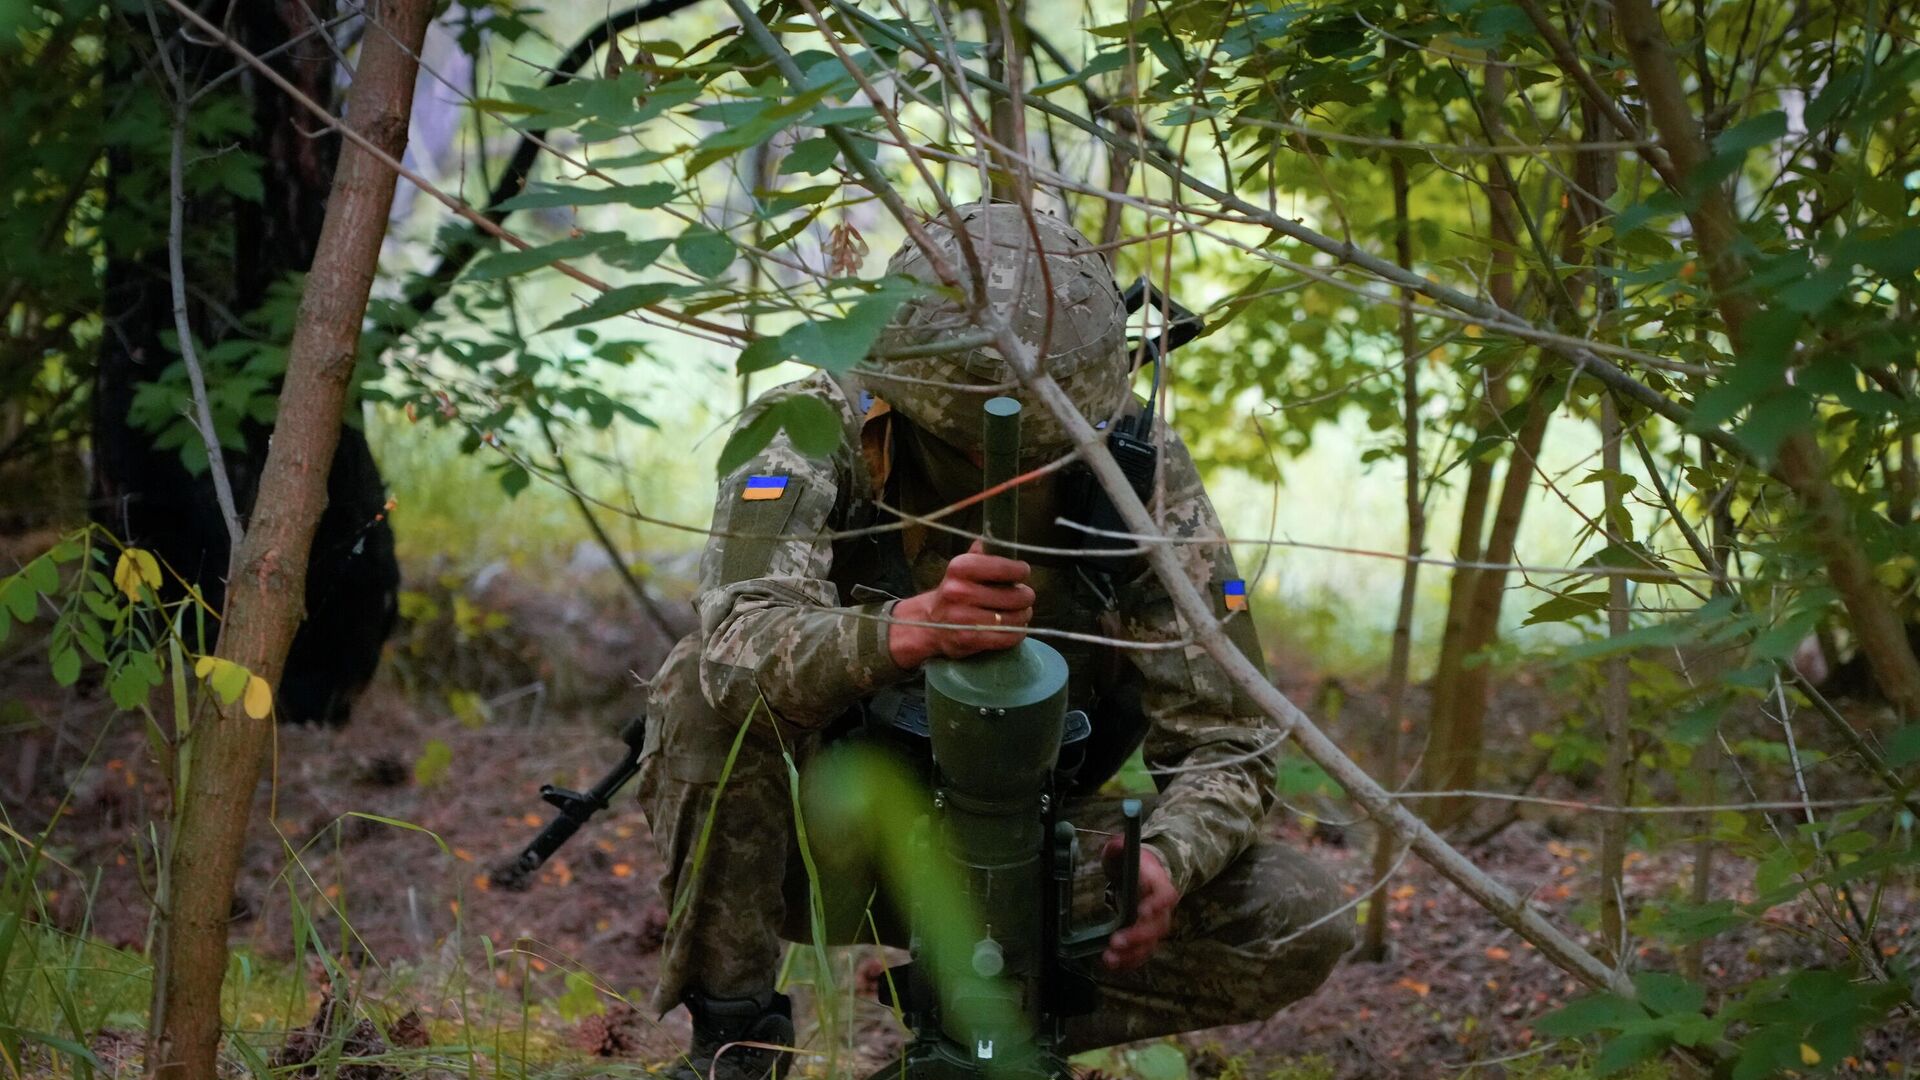 Солдат спецподразделения Украины устанавливает немецкую противотанковую мину направленного действия DM22 в Донецкой области - РИА Новости, 1920, 29.06.2022